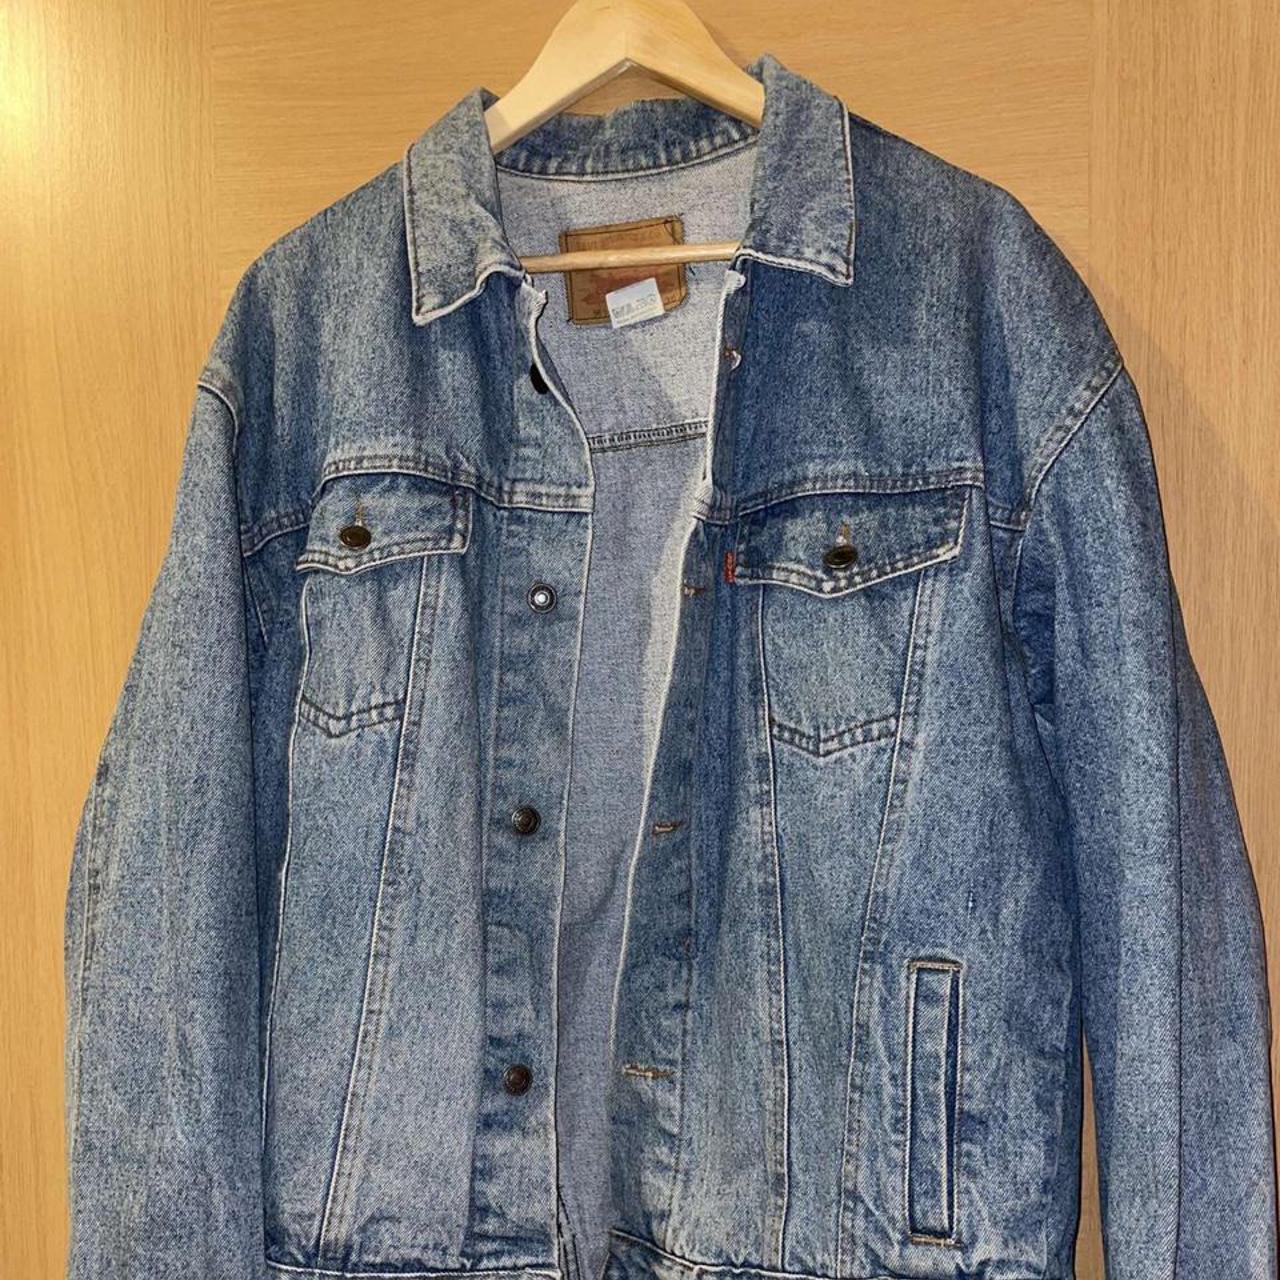 Levi’s blue denim jacket. Great vintage item in... - Depop